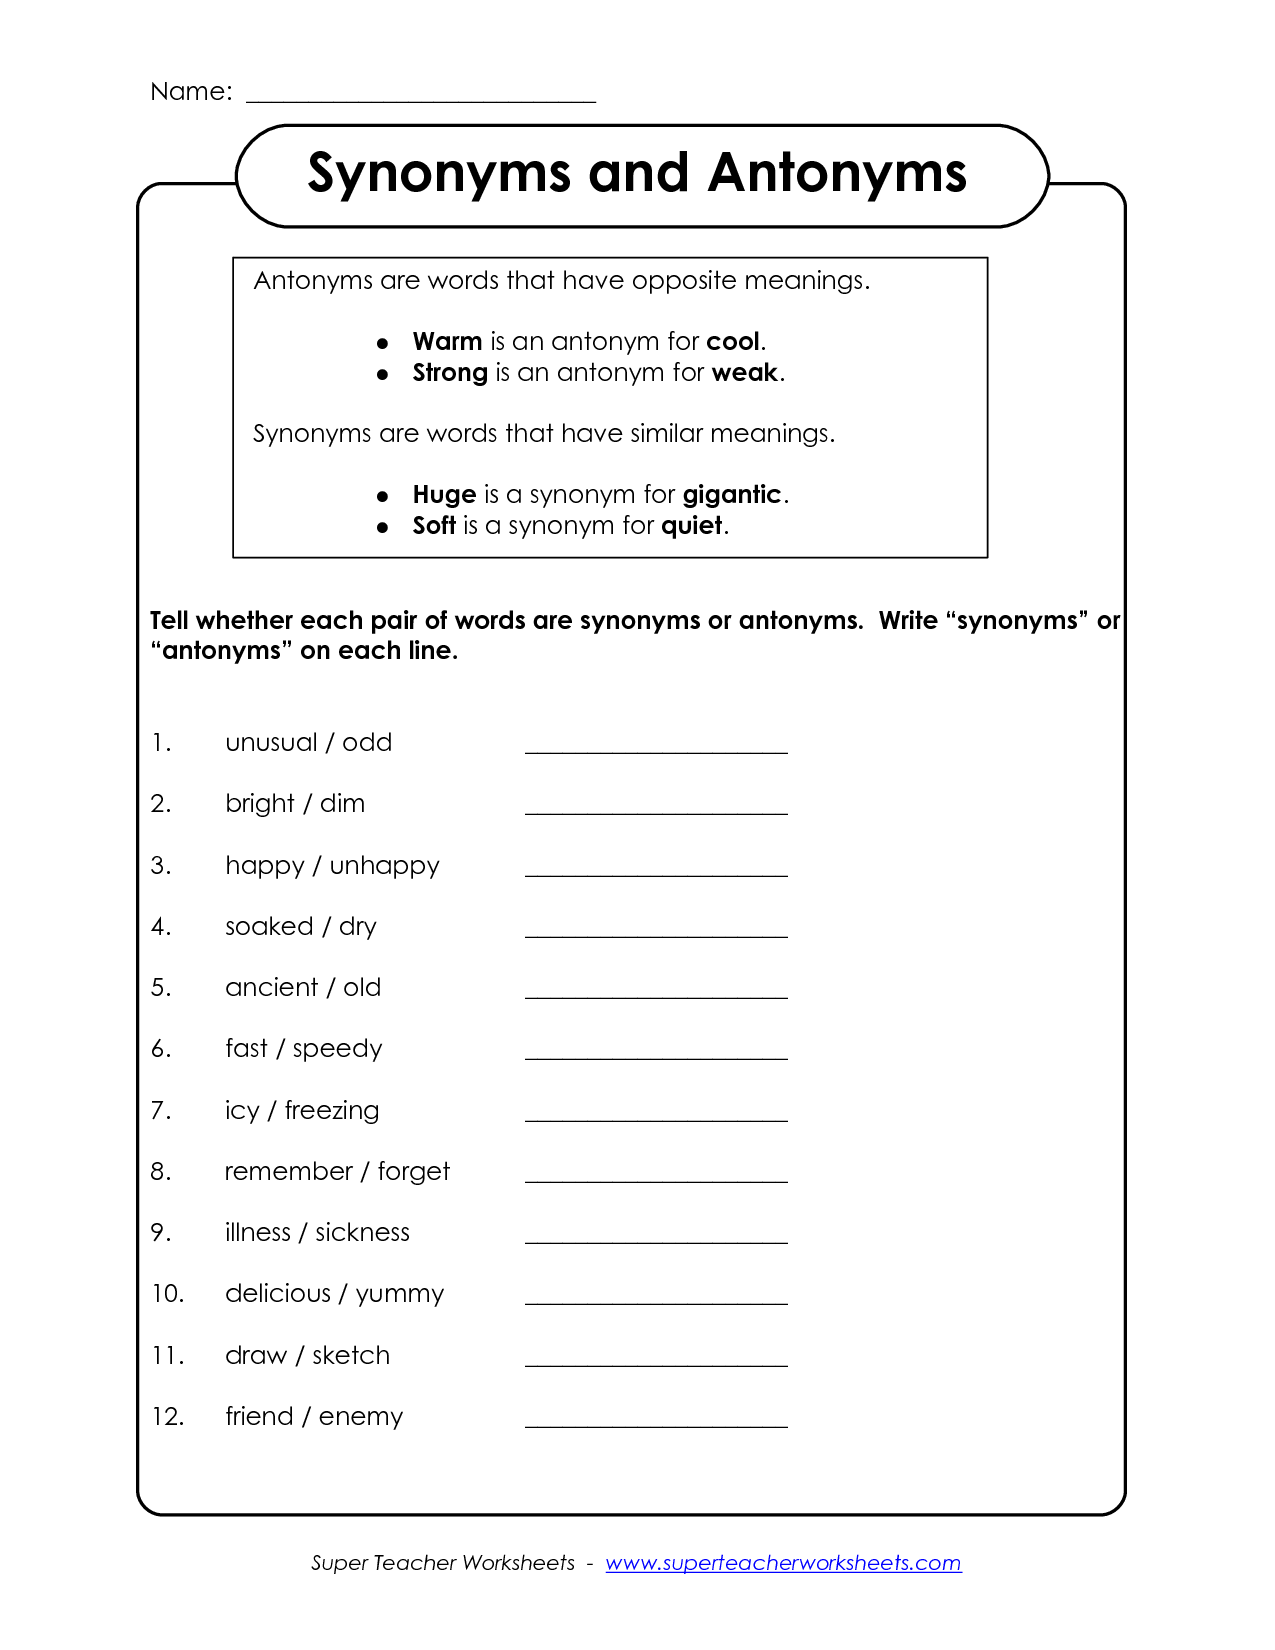 15-synonym-antonym-worksheets-worksheeto